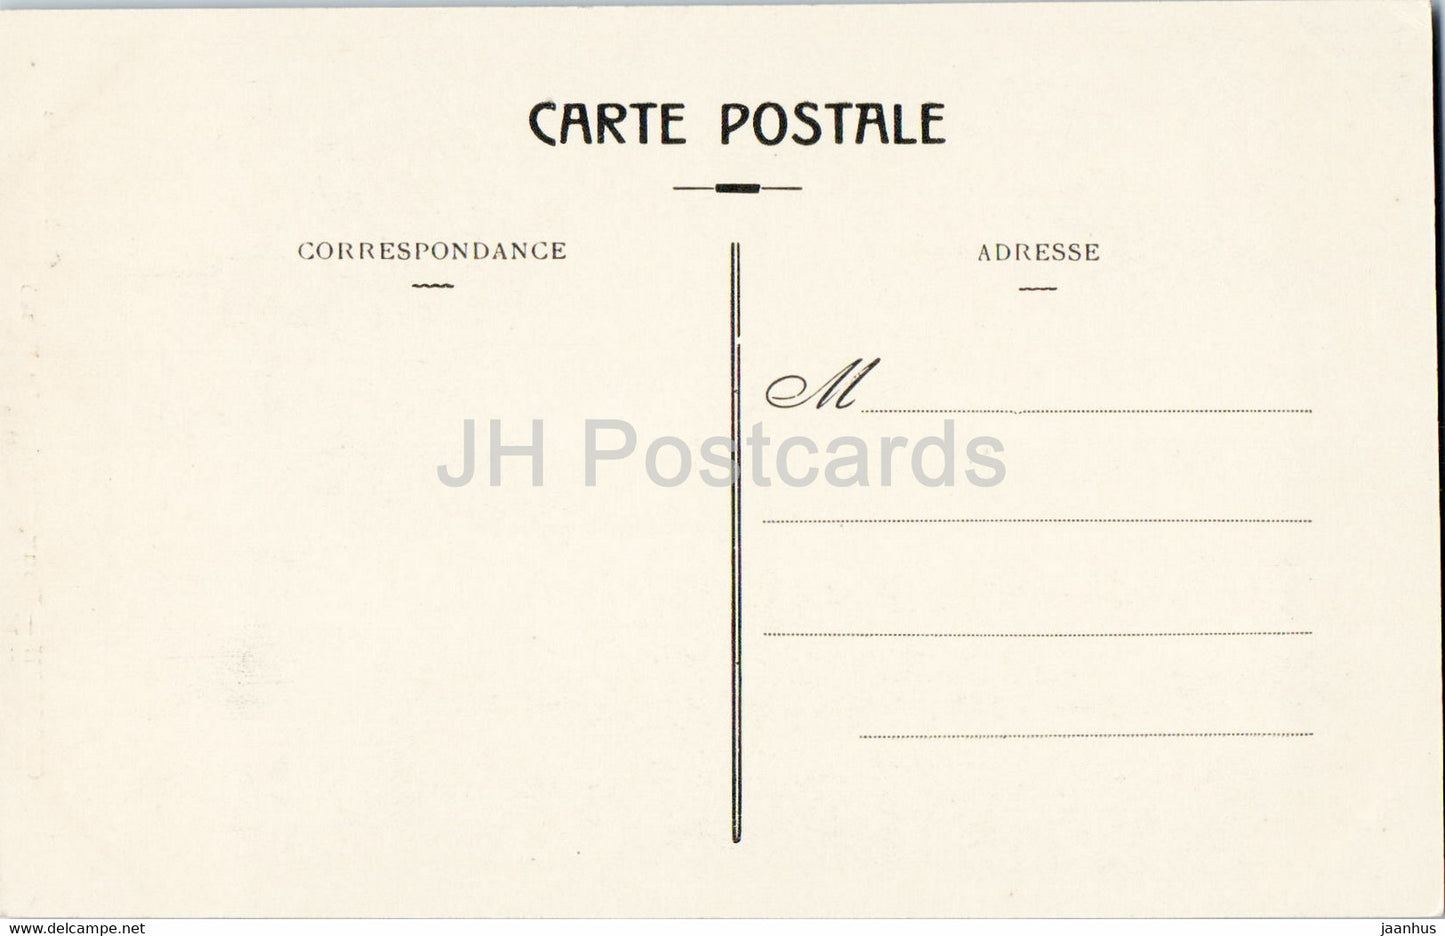 Cogolin - Deux temoins du Passe Vieux Moulin et Vieille Tour - alte Postkarte - 1916 - Frankreich - unbenutzt